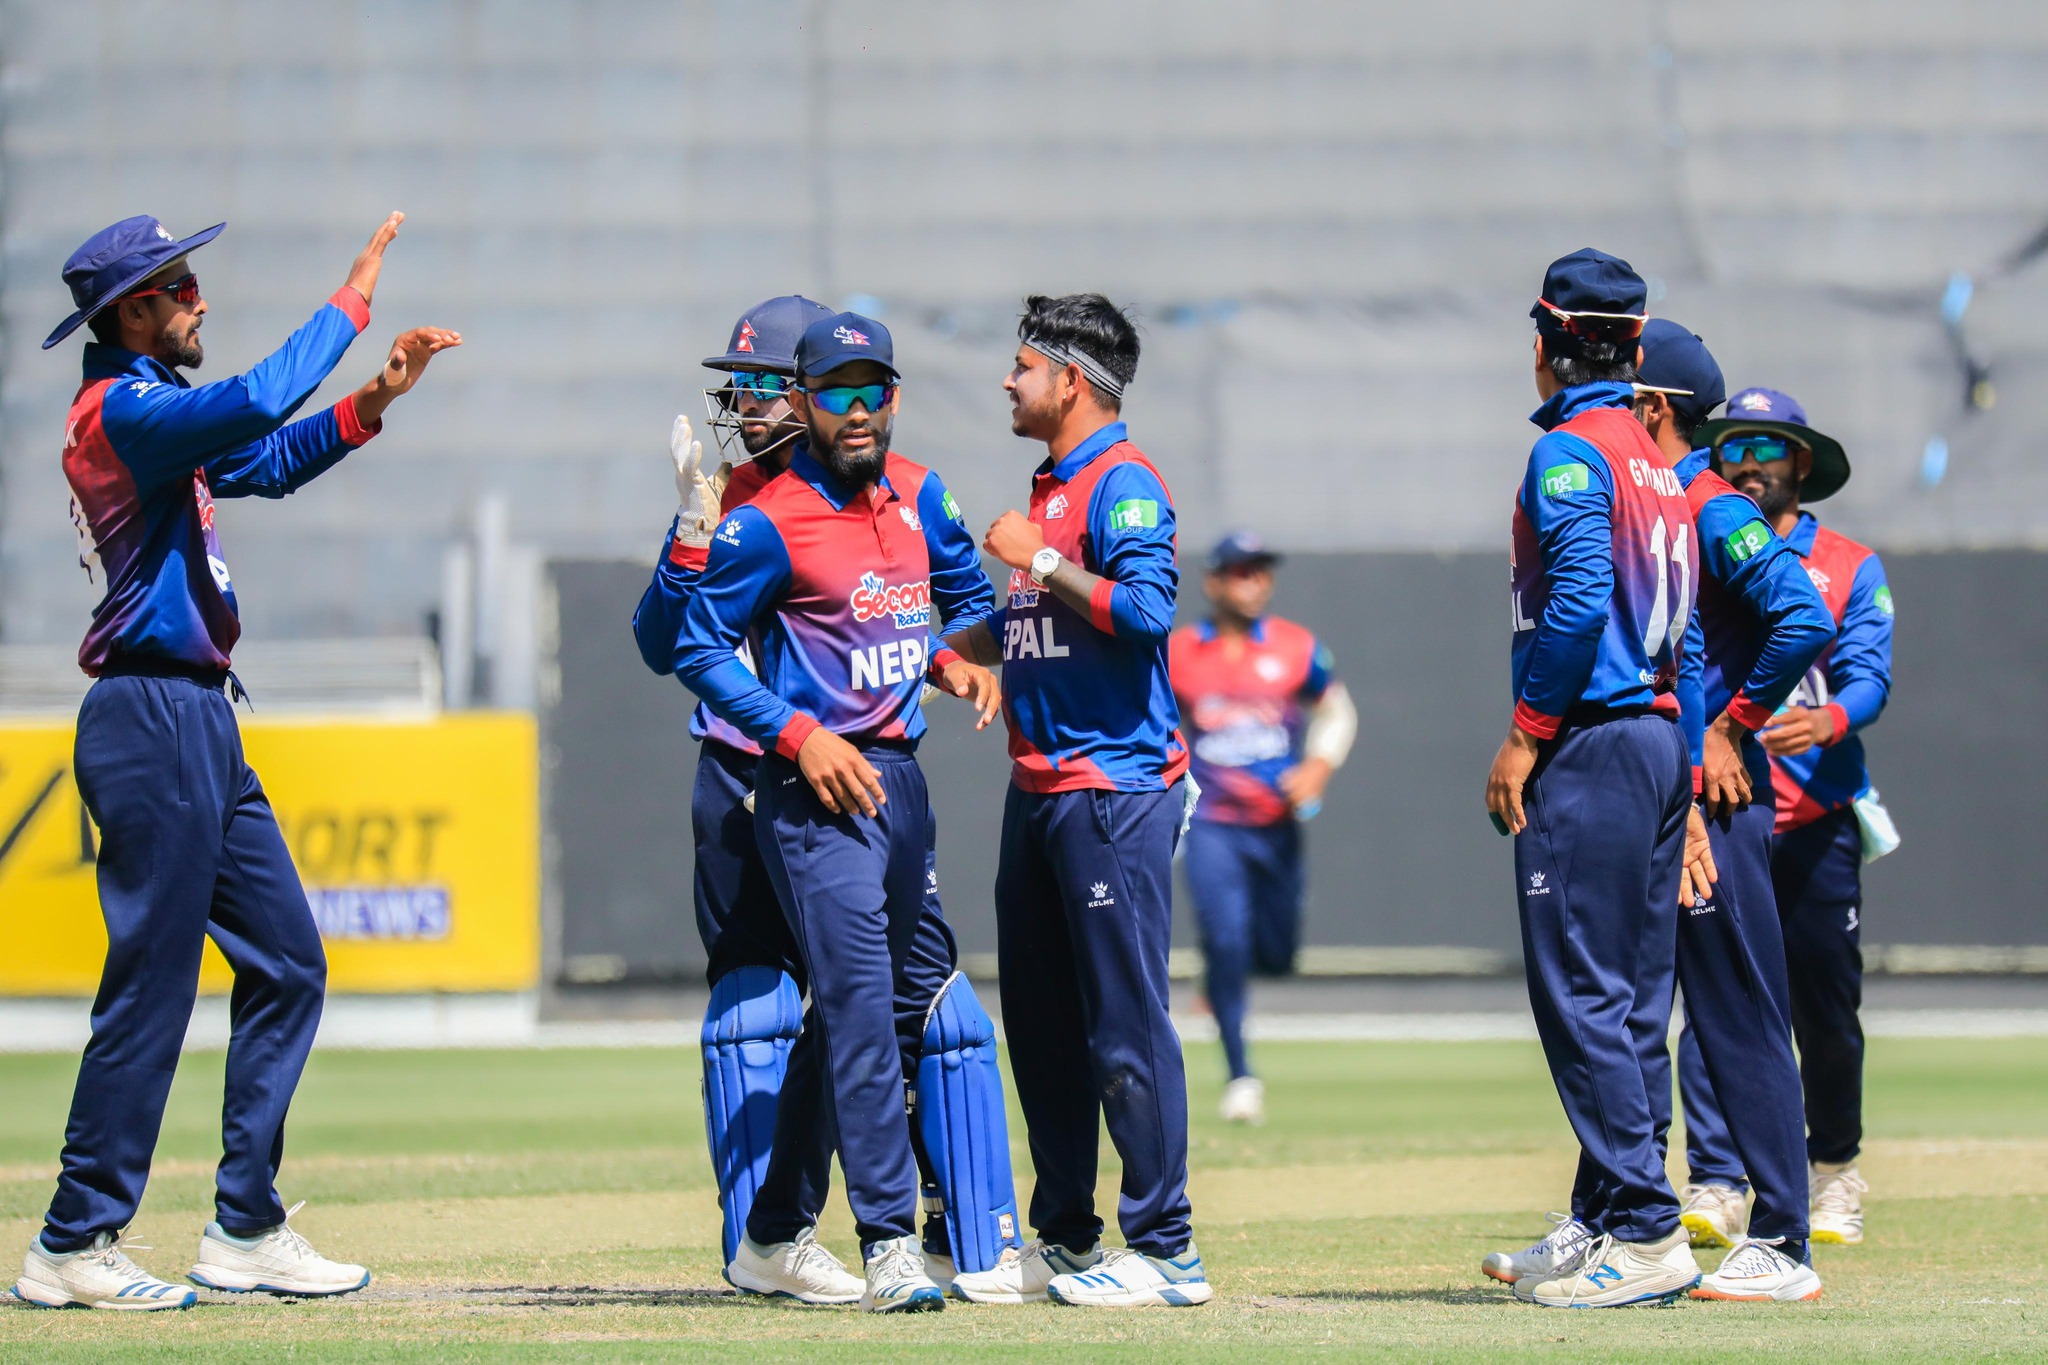 नेपाल र जिम्बाब्वेको ‘ए’ बीच पहिलो एक दिवसीय क्रिकेट श्रृङ्खला आज